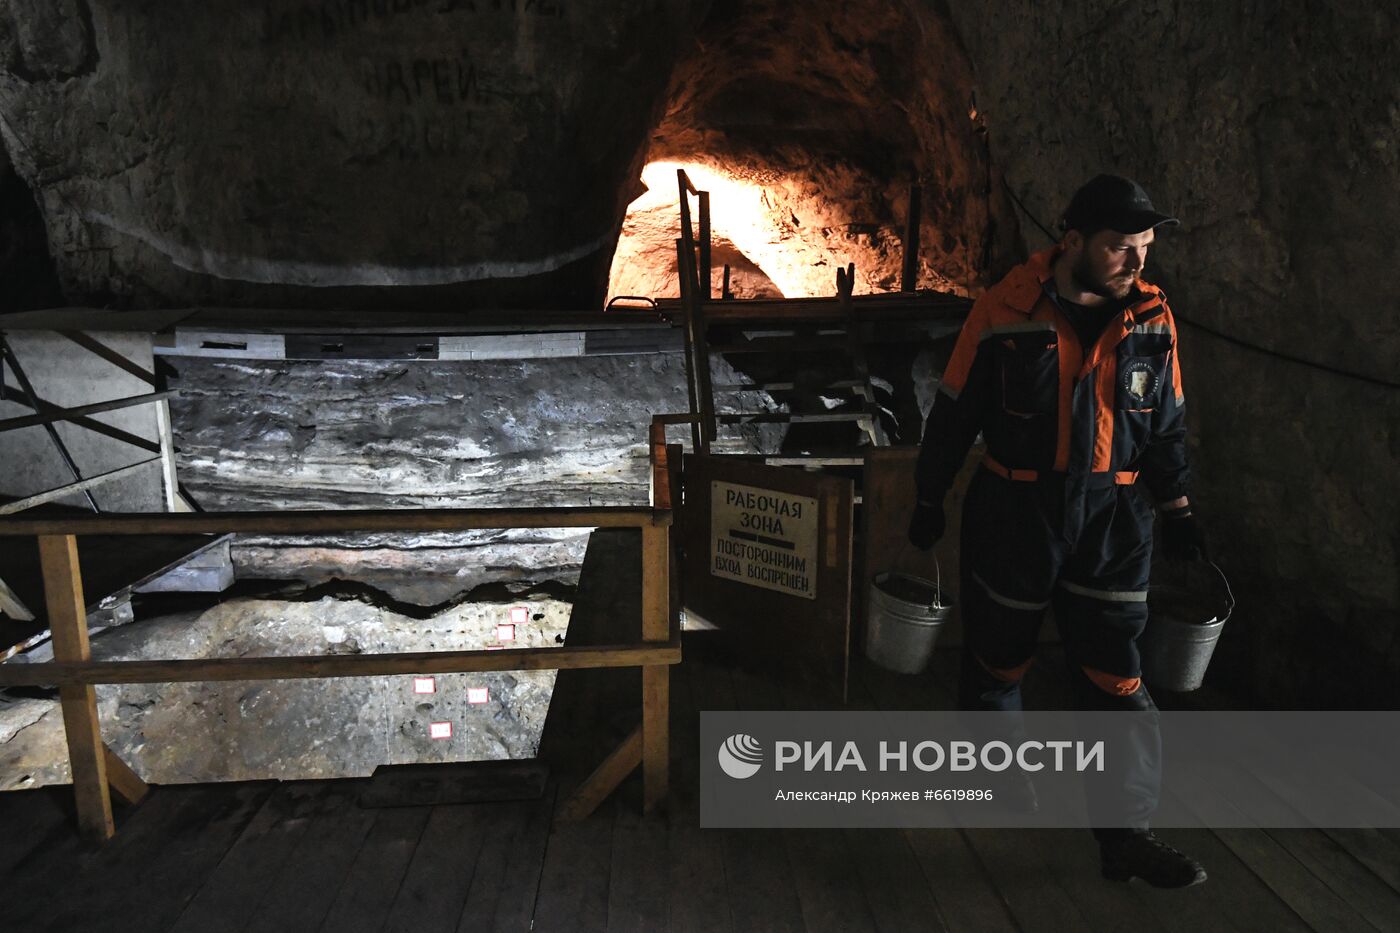 Археологический памятник "Денисова пещера" в Алтайском крае